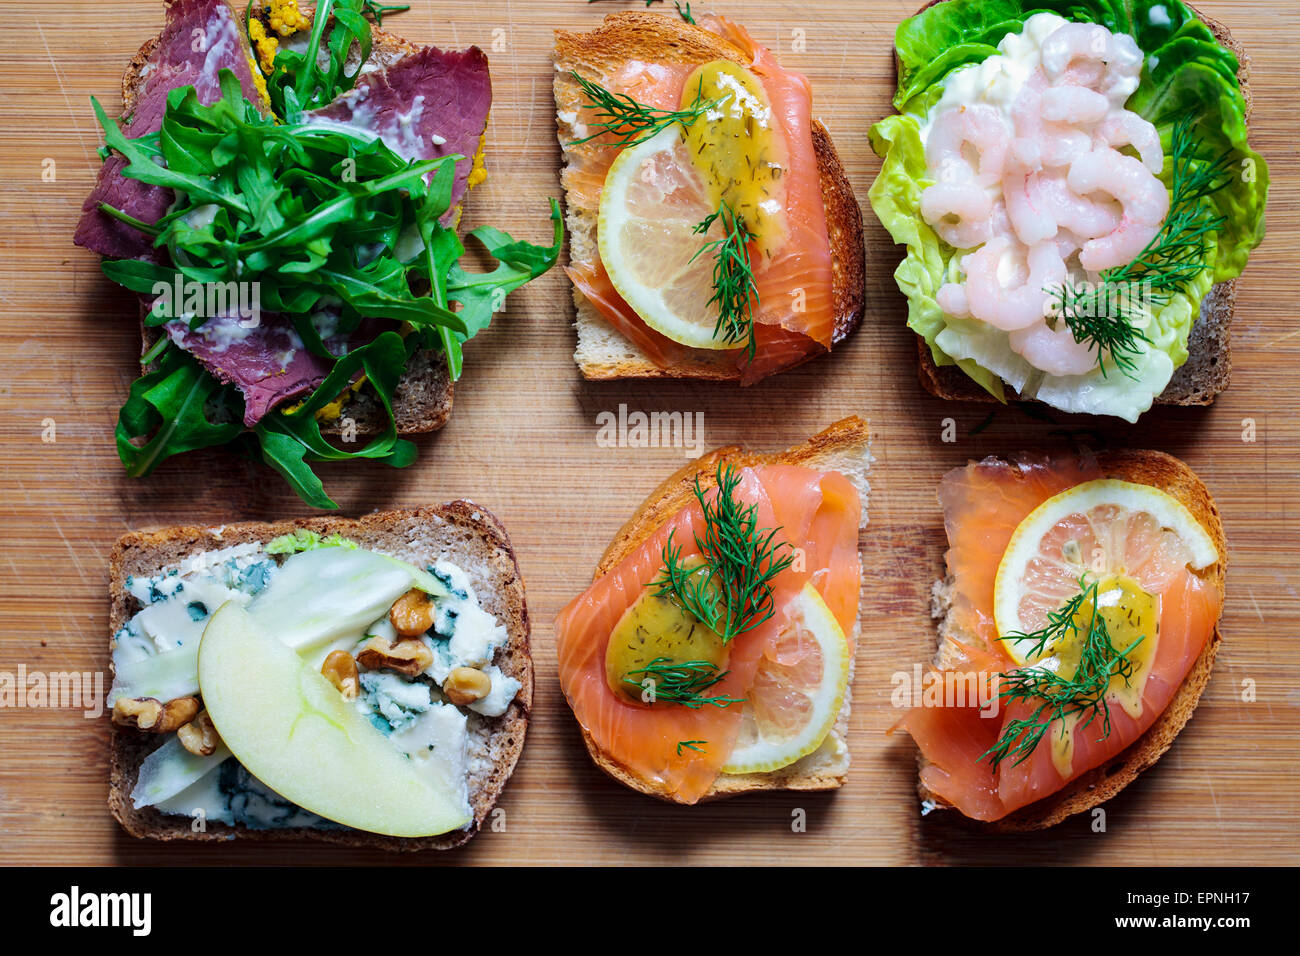 Sélection de sandwiches ouverts scandinaves Banque D'Images